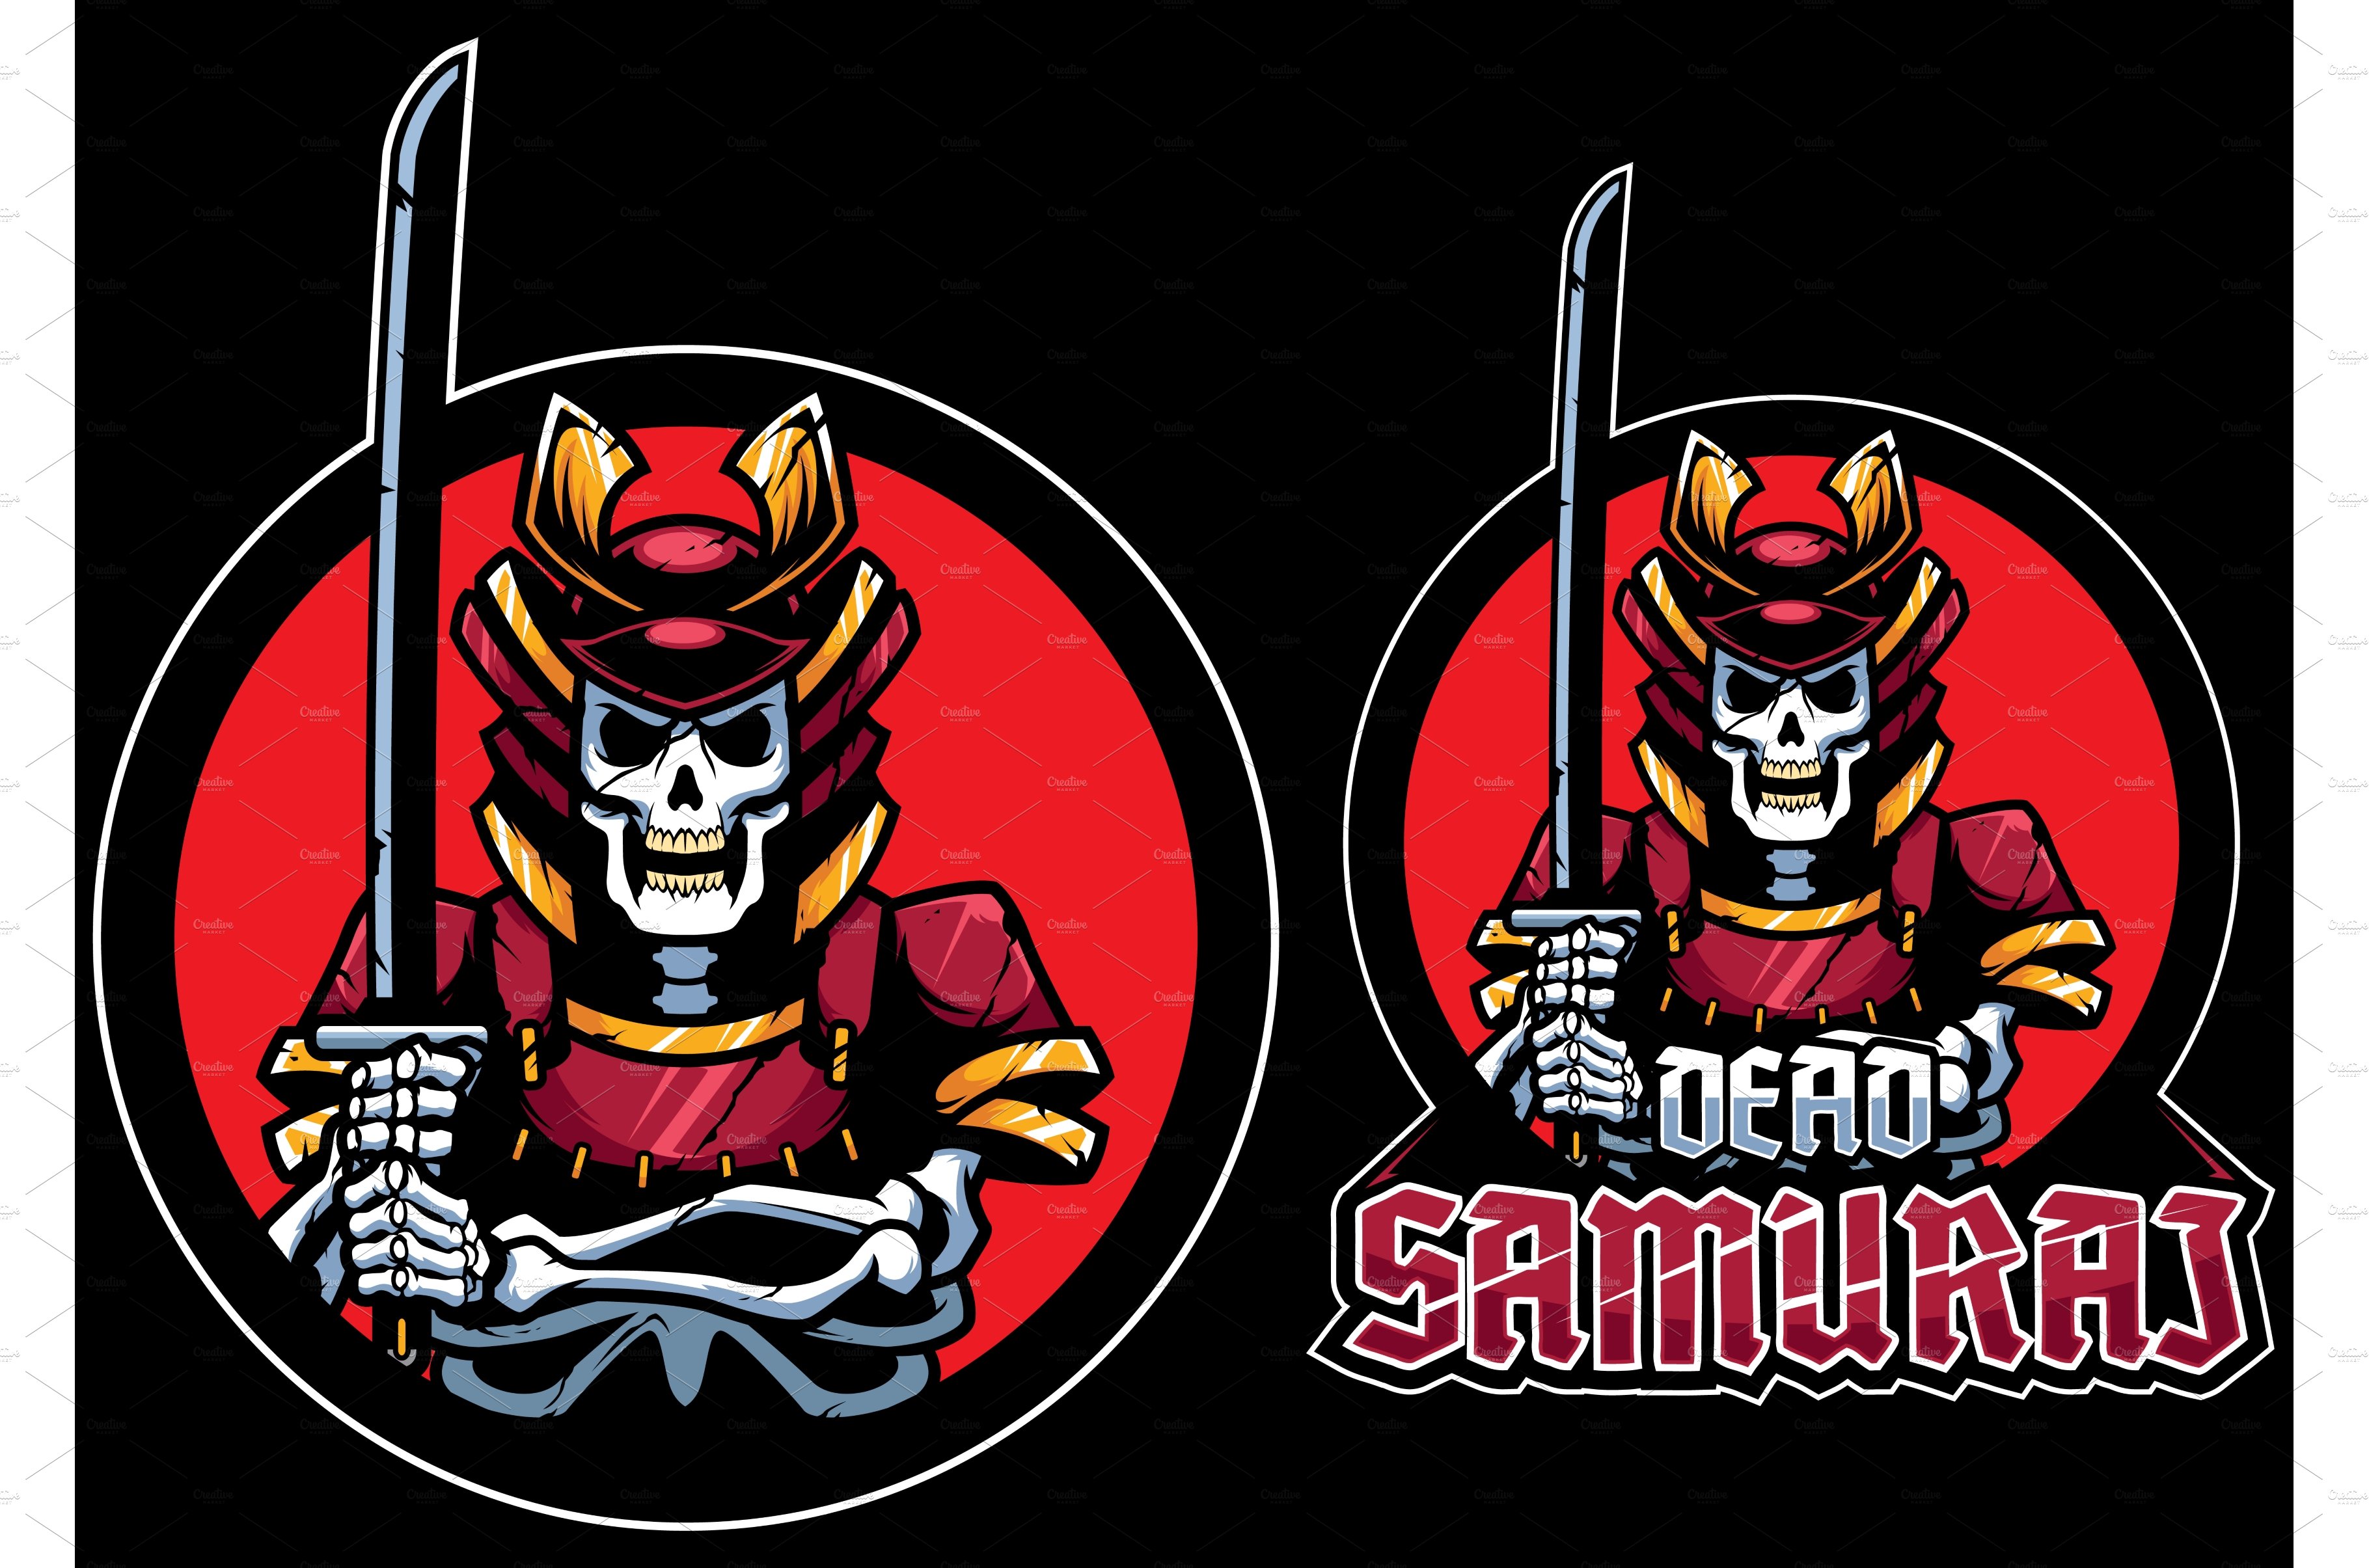 Dead Samurai Mascot cover image.